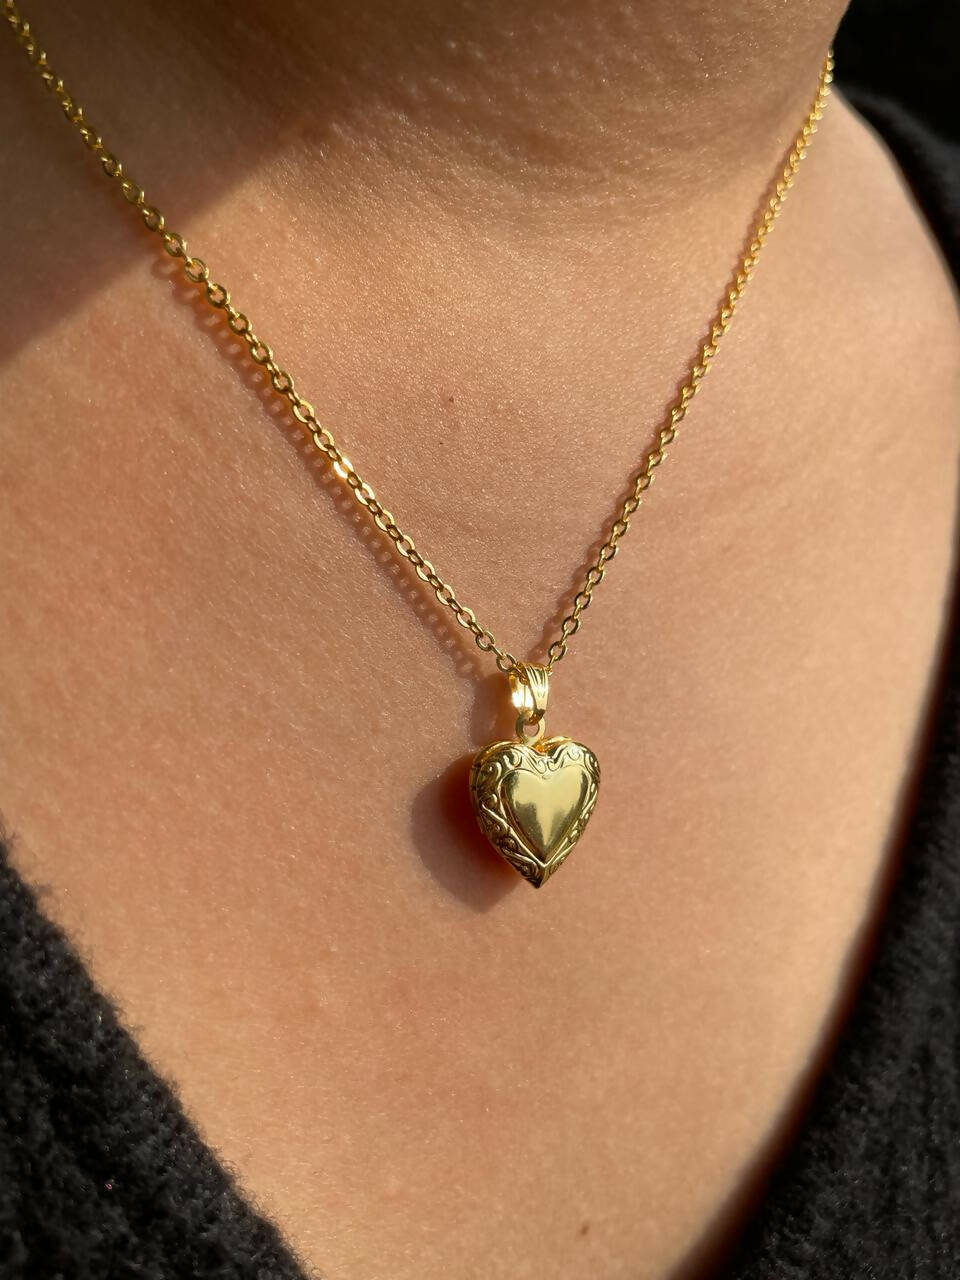 Mini heart pendant